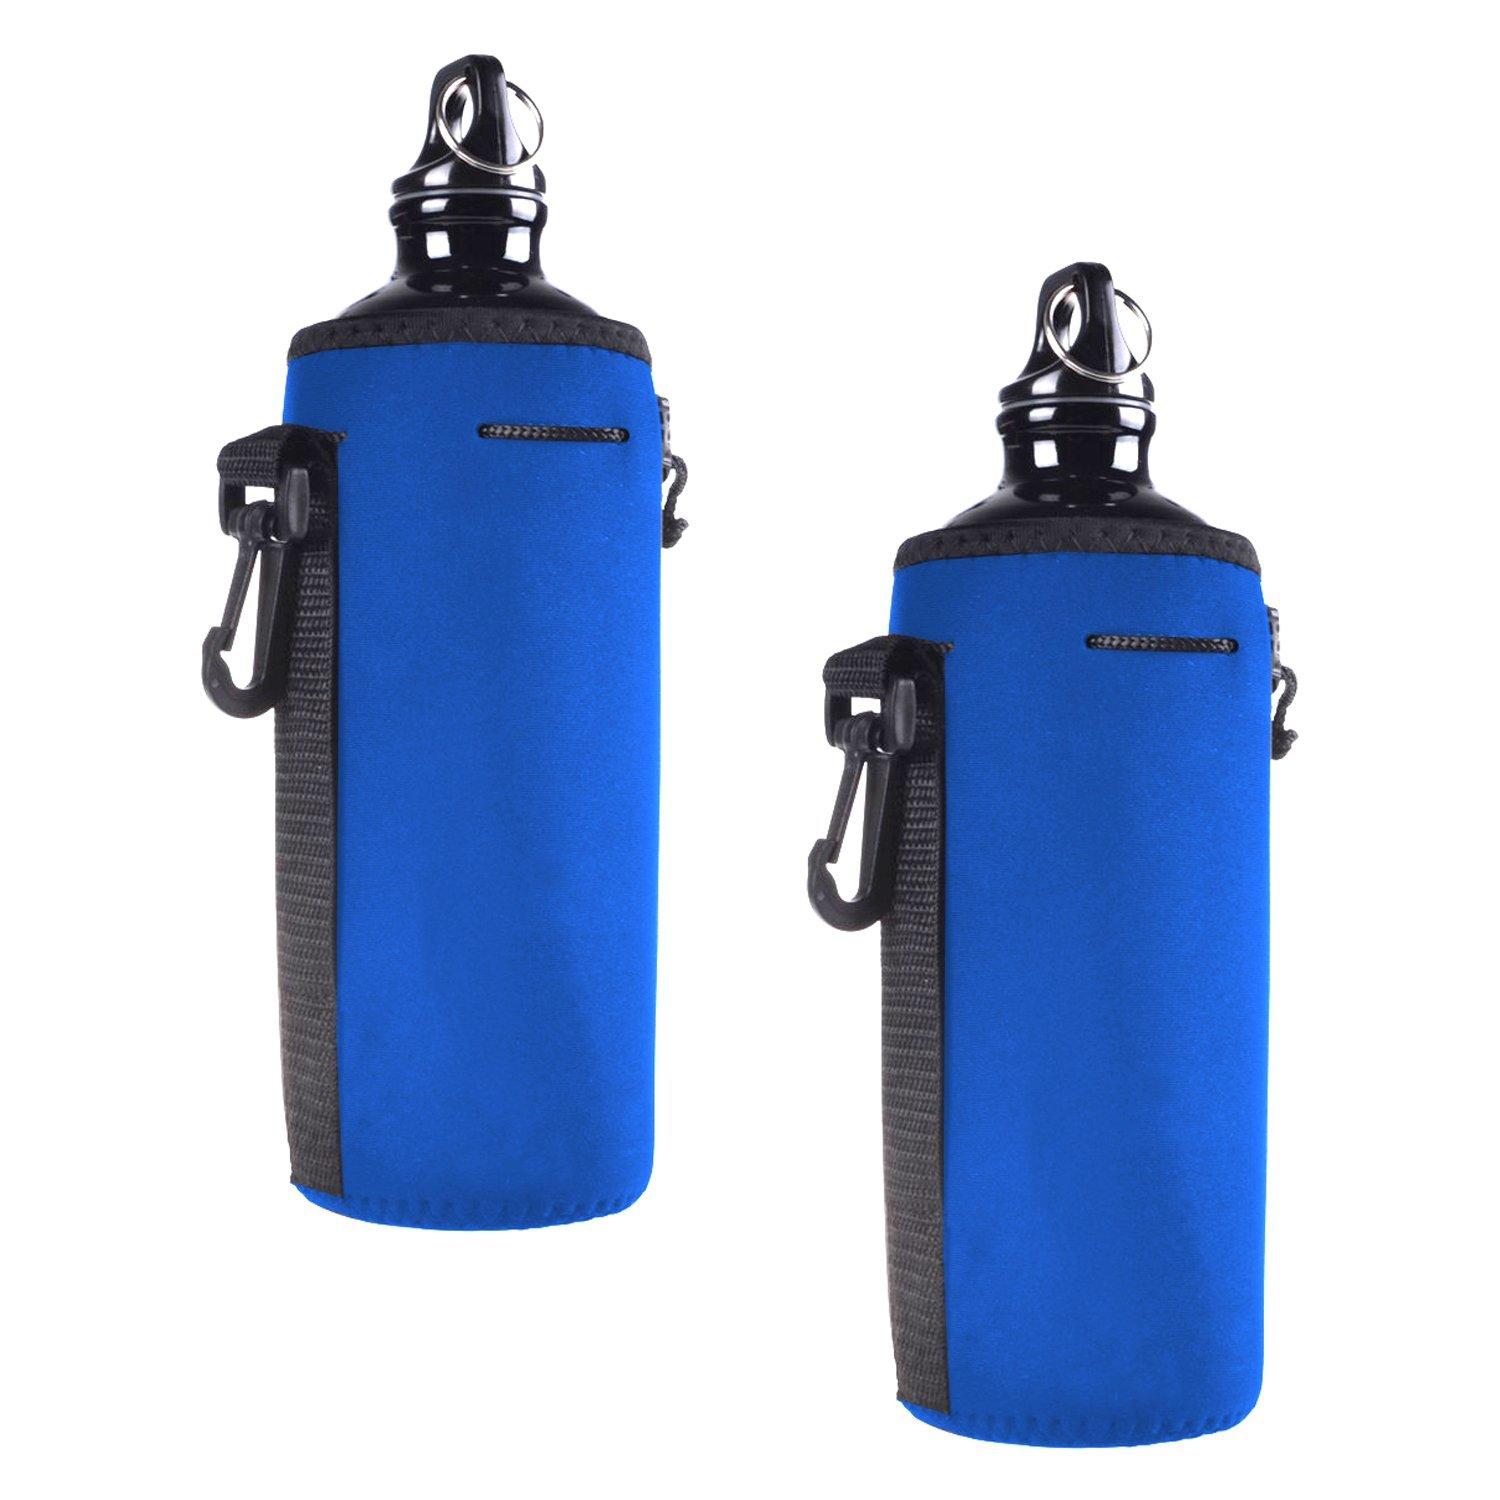 Prosperity sleeve neoprene travel bag water bottle holder for sale-2